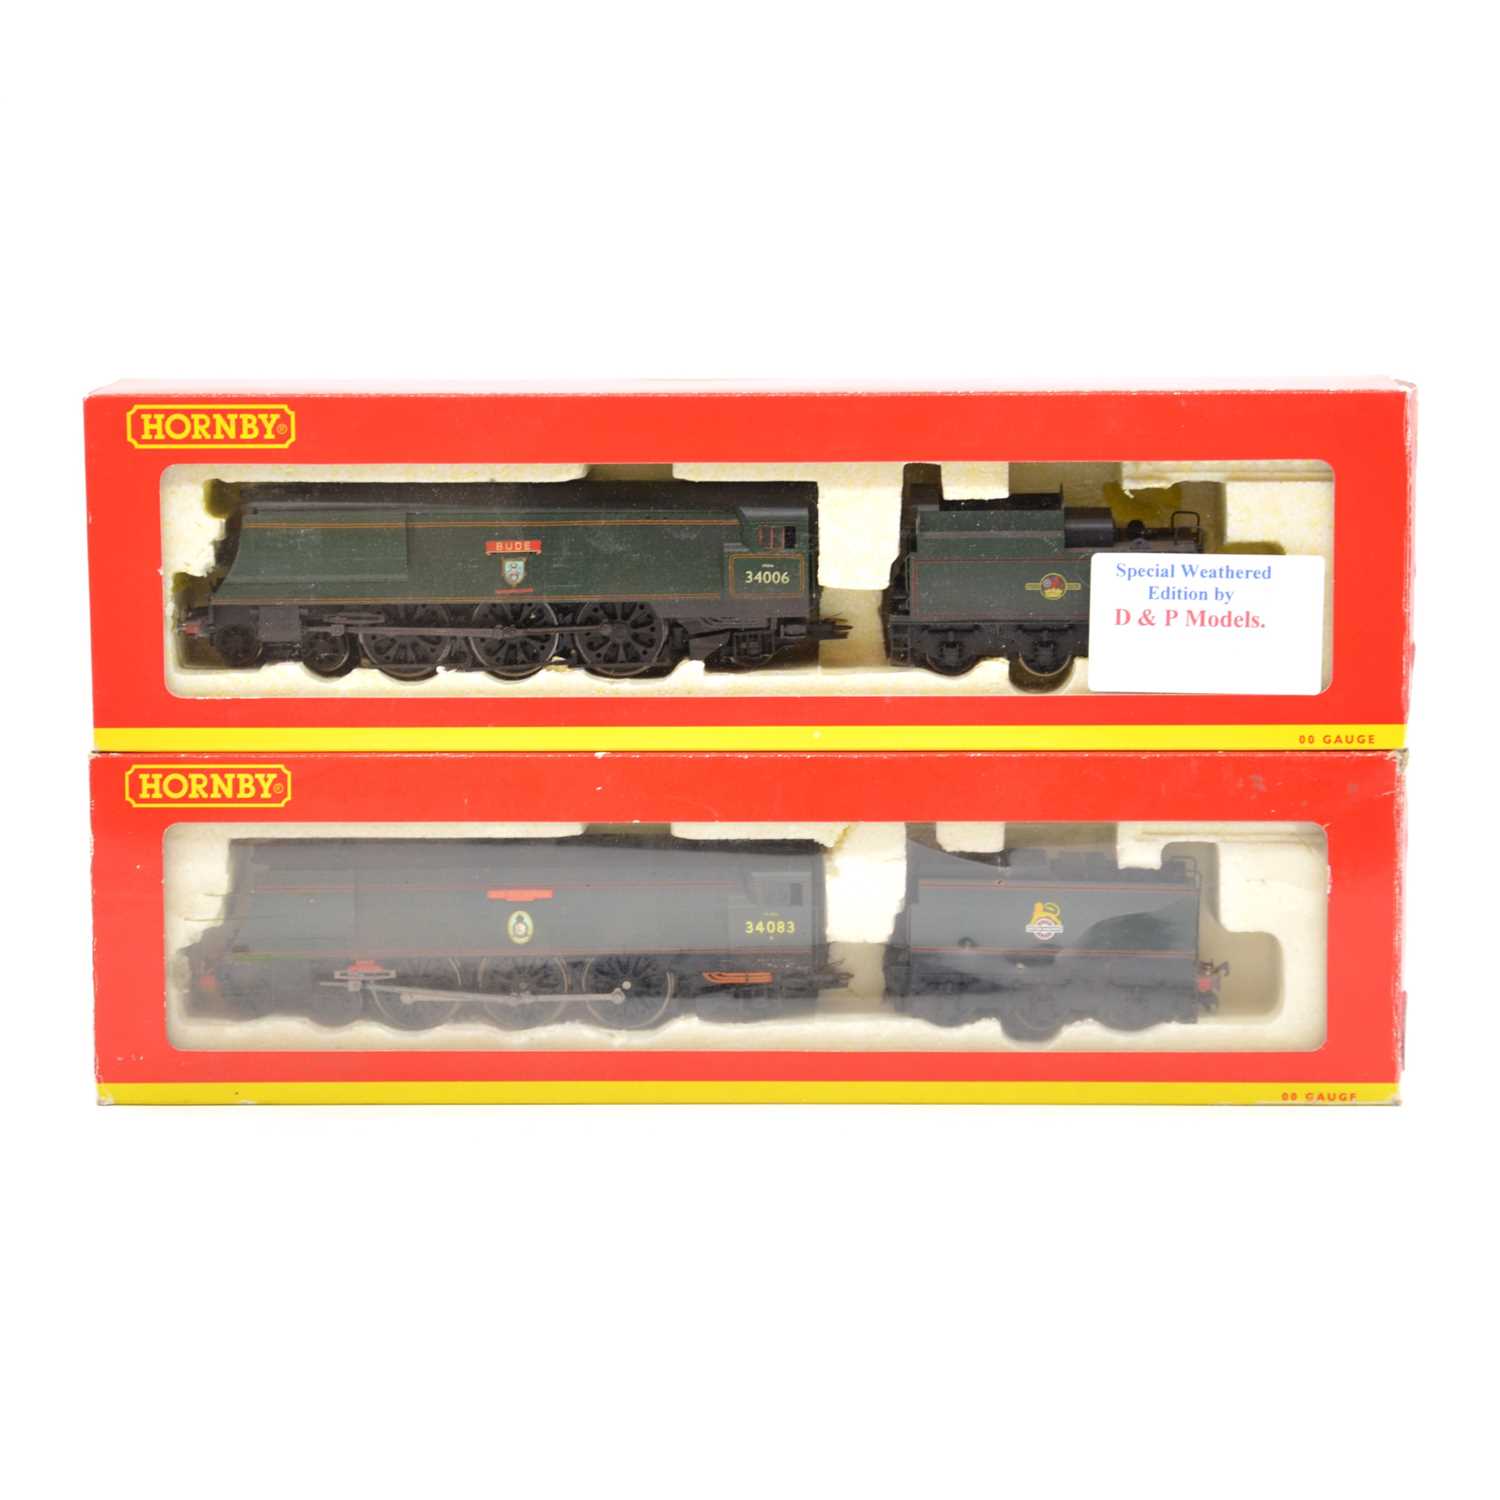 Lot 173 - Two Hornby OO gauge model railway steam locomotives with tenders